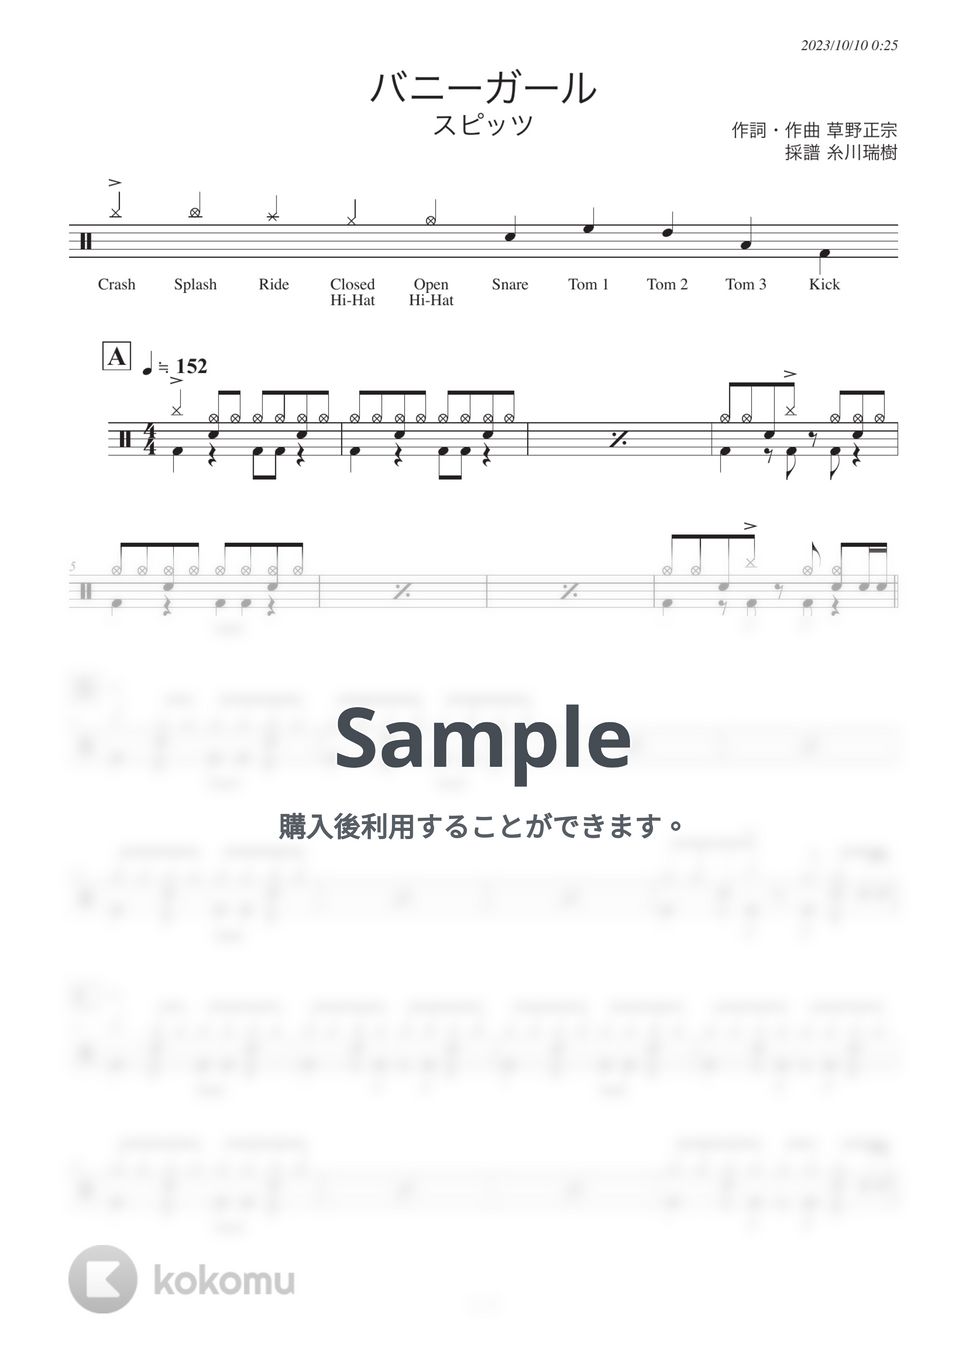 スピッツ - バニーガール (ドラムパート) by 糸川瑞樹